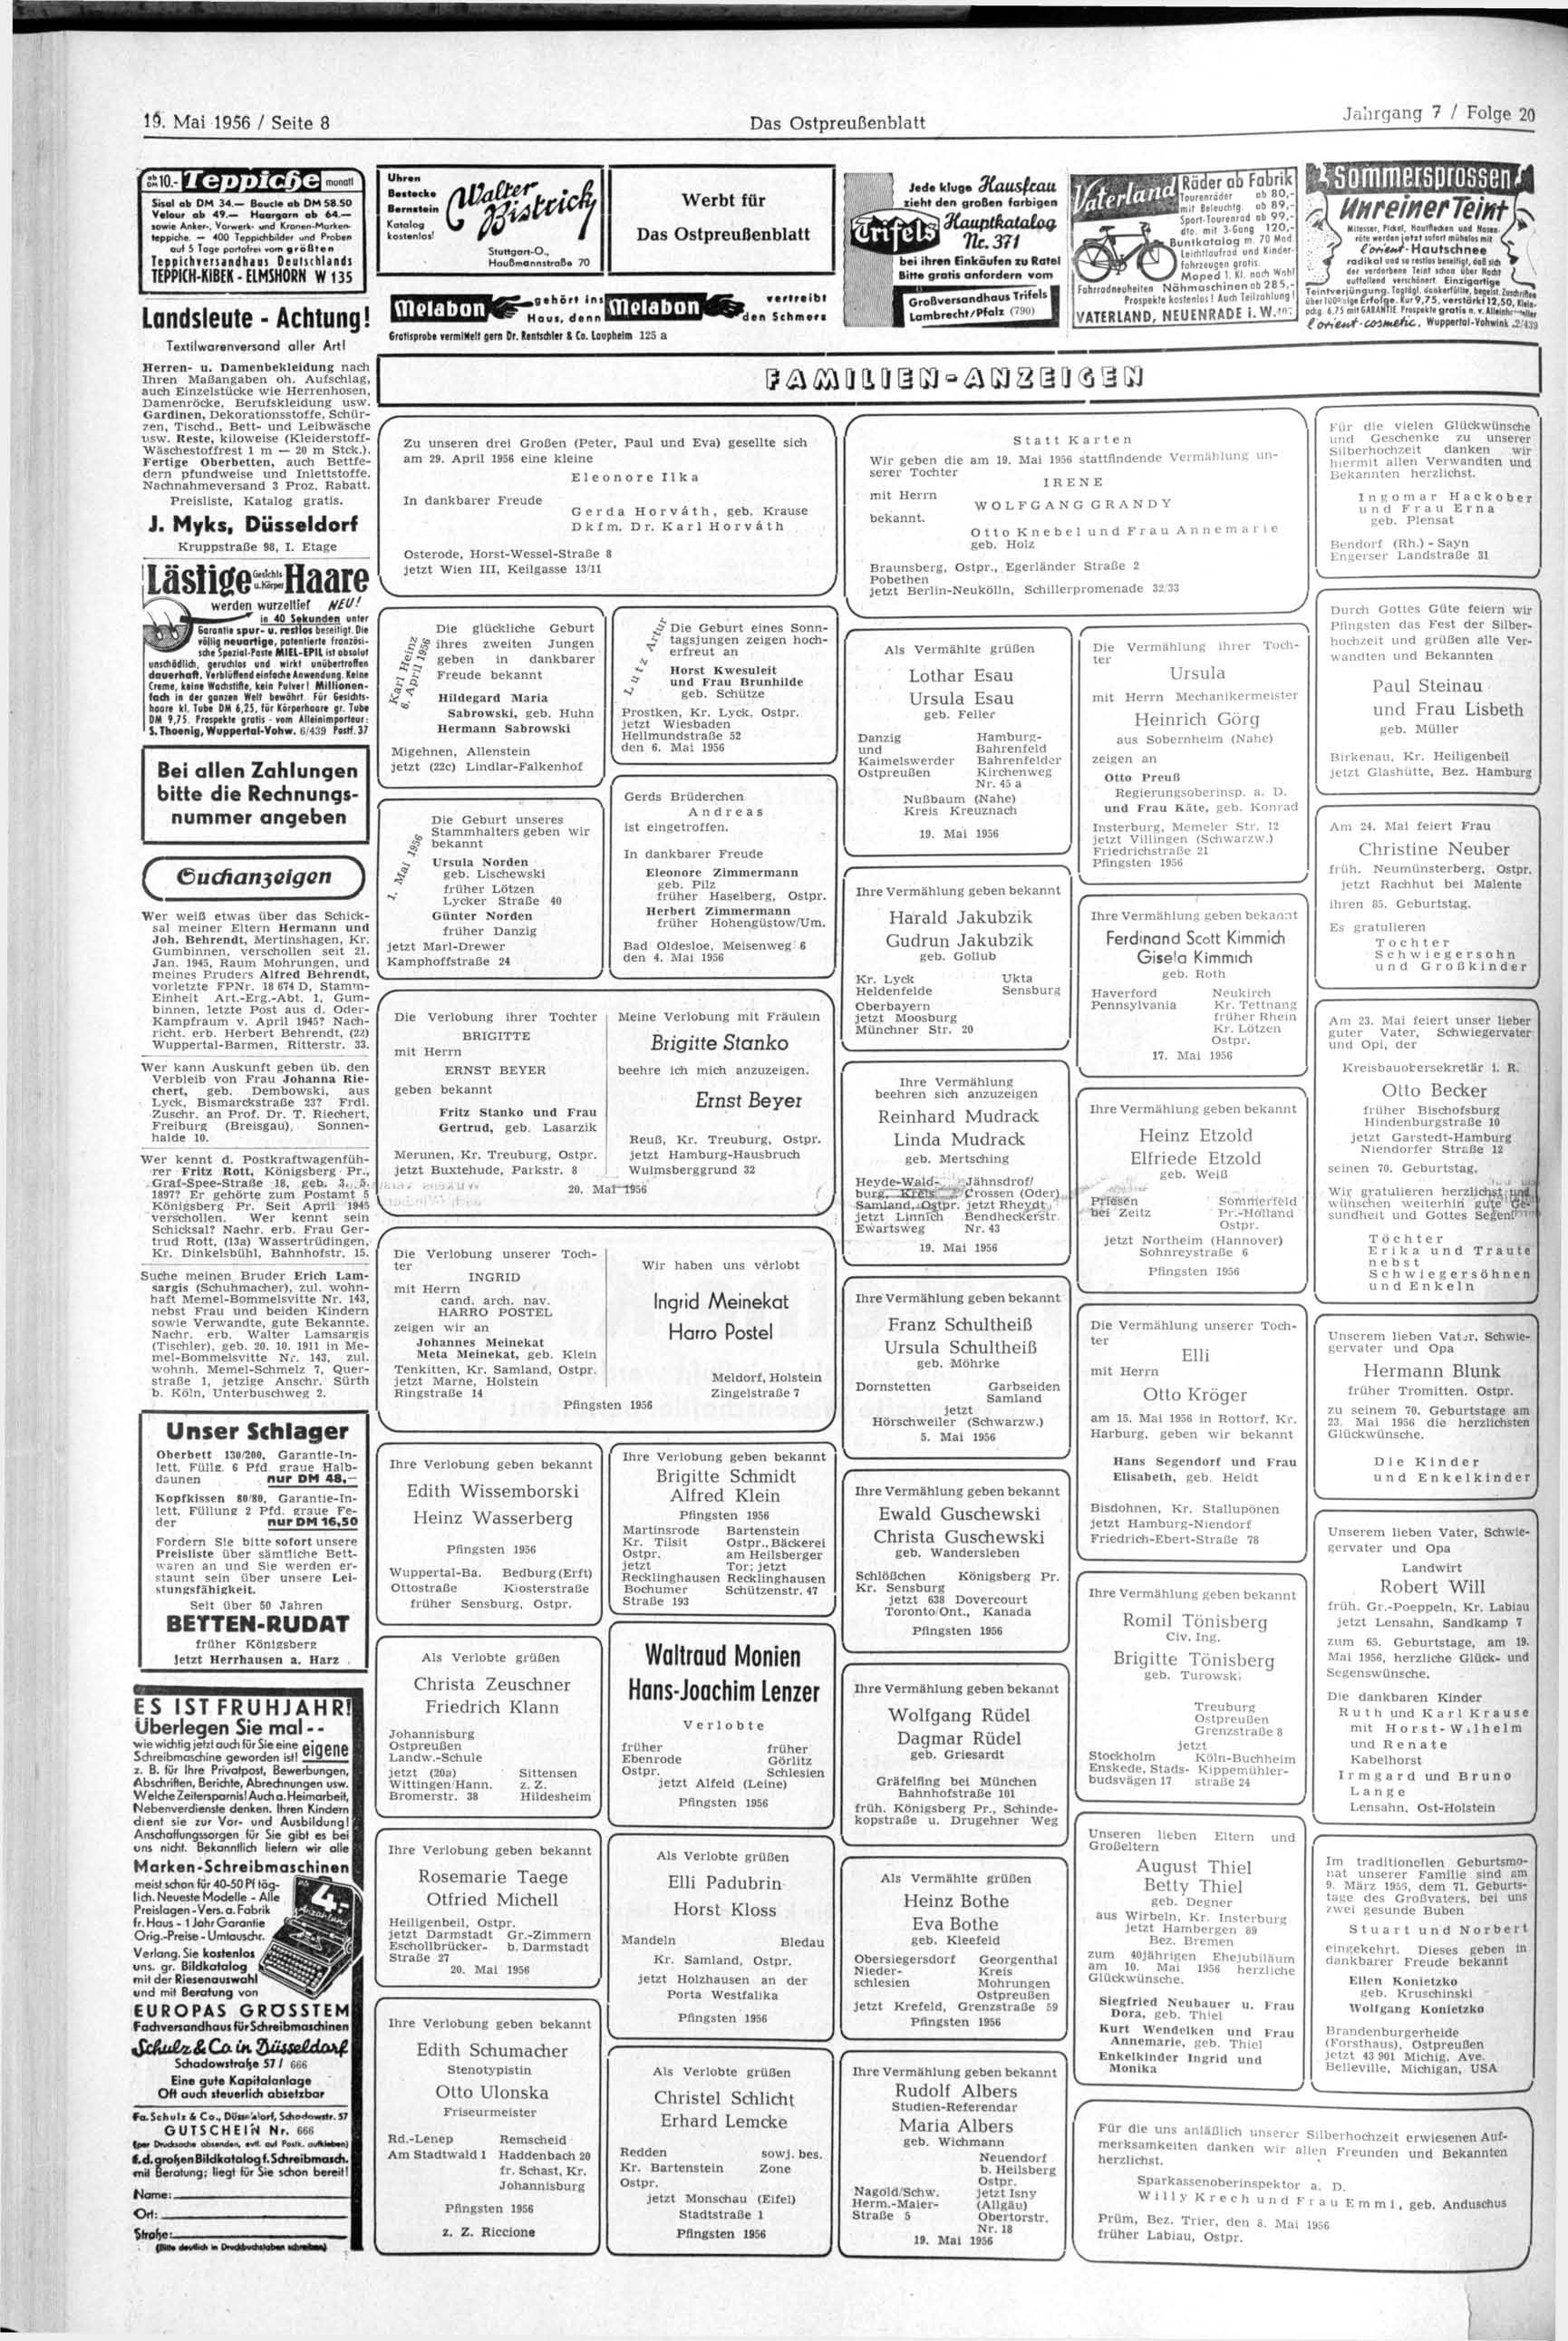 19. Mai 1956 / Seite 8 Das Ostpreußenblatt Sisal ab DM 34. Boucle ab DM S8.50 Velour ab 49. Haargarn ab 64. sowie Anker*. Vorwerk* und Kronen-Markenteppiche.